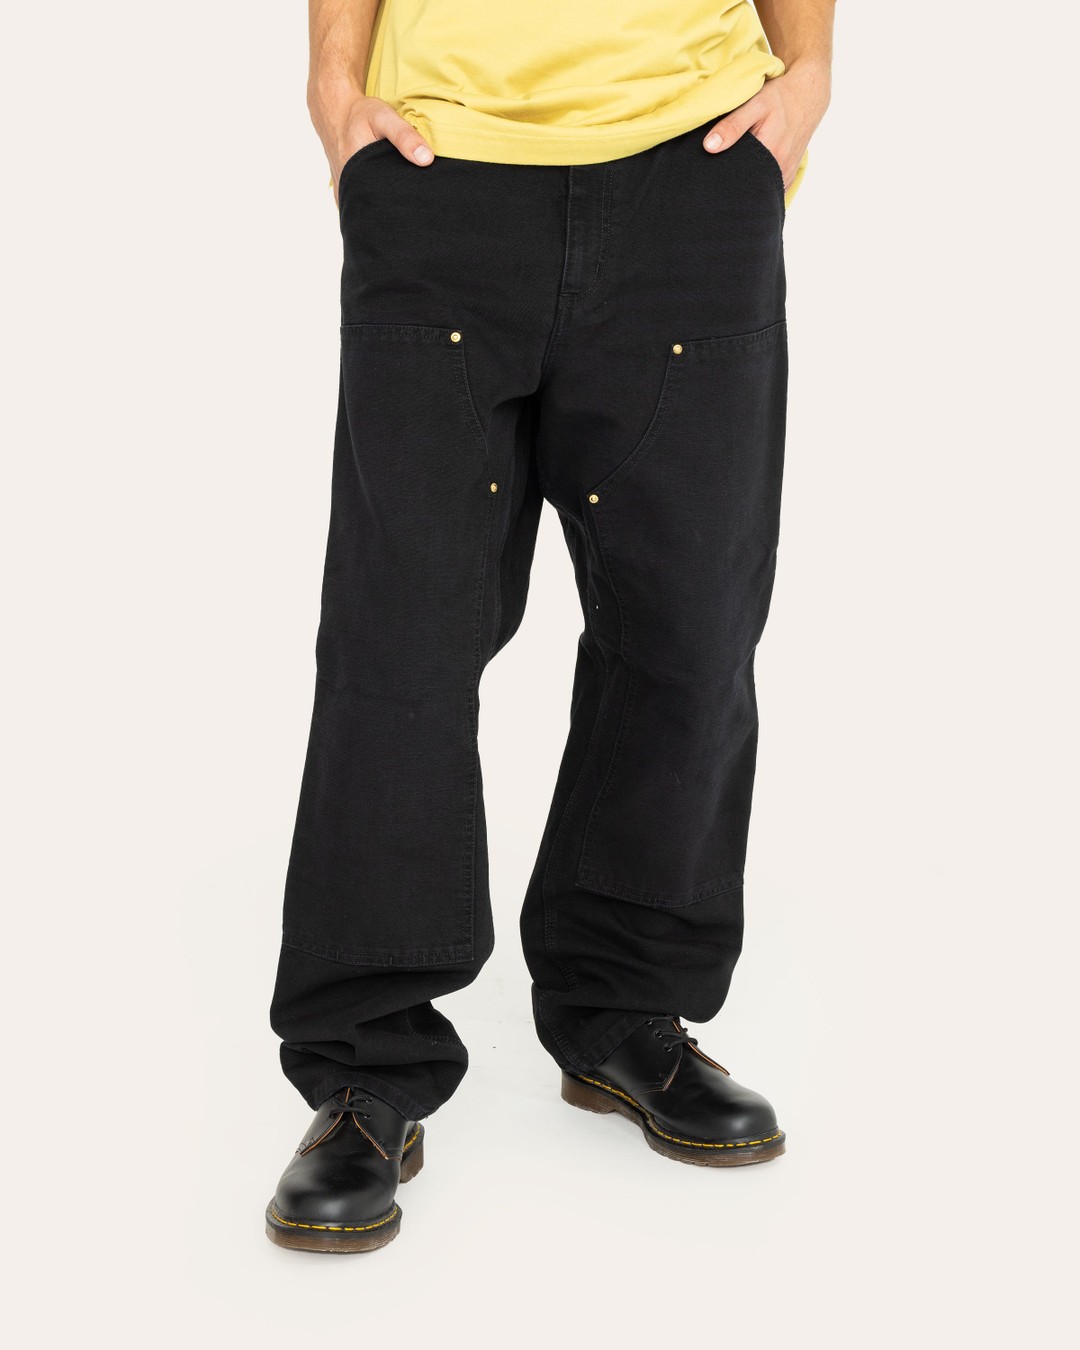 Carhartt WIP – Double Knee Pant Black - Pants - Black - Image 2